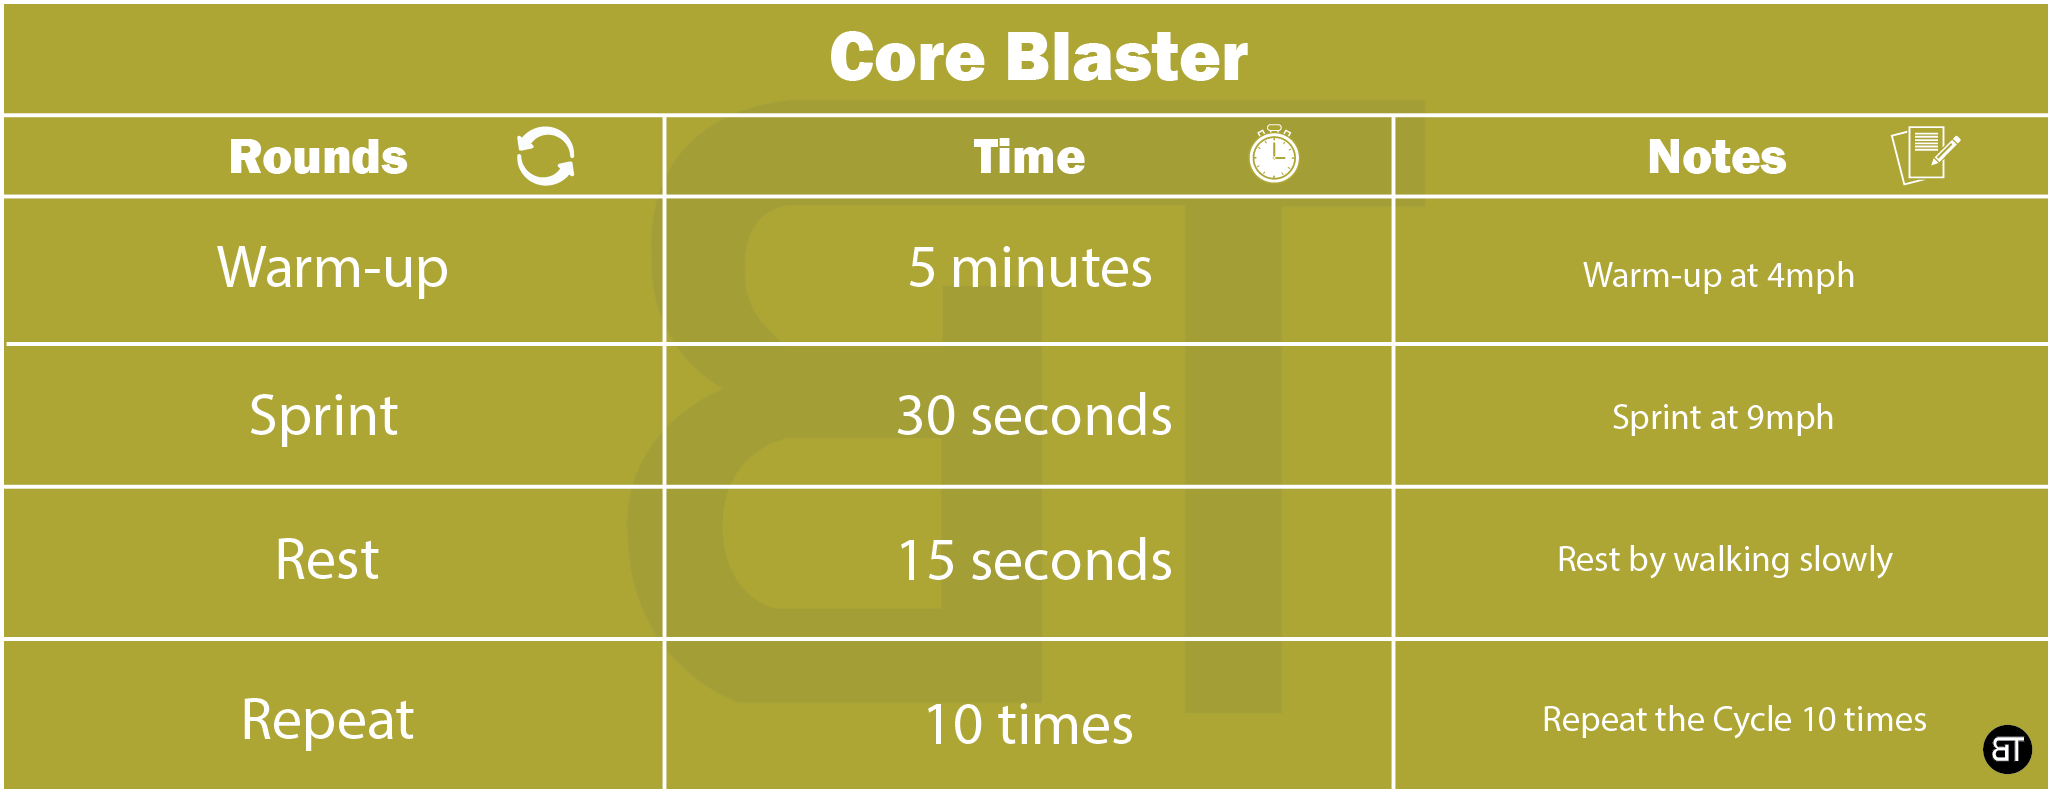 Core Blaster